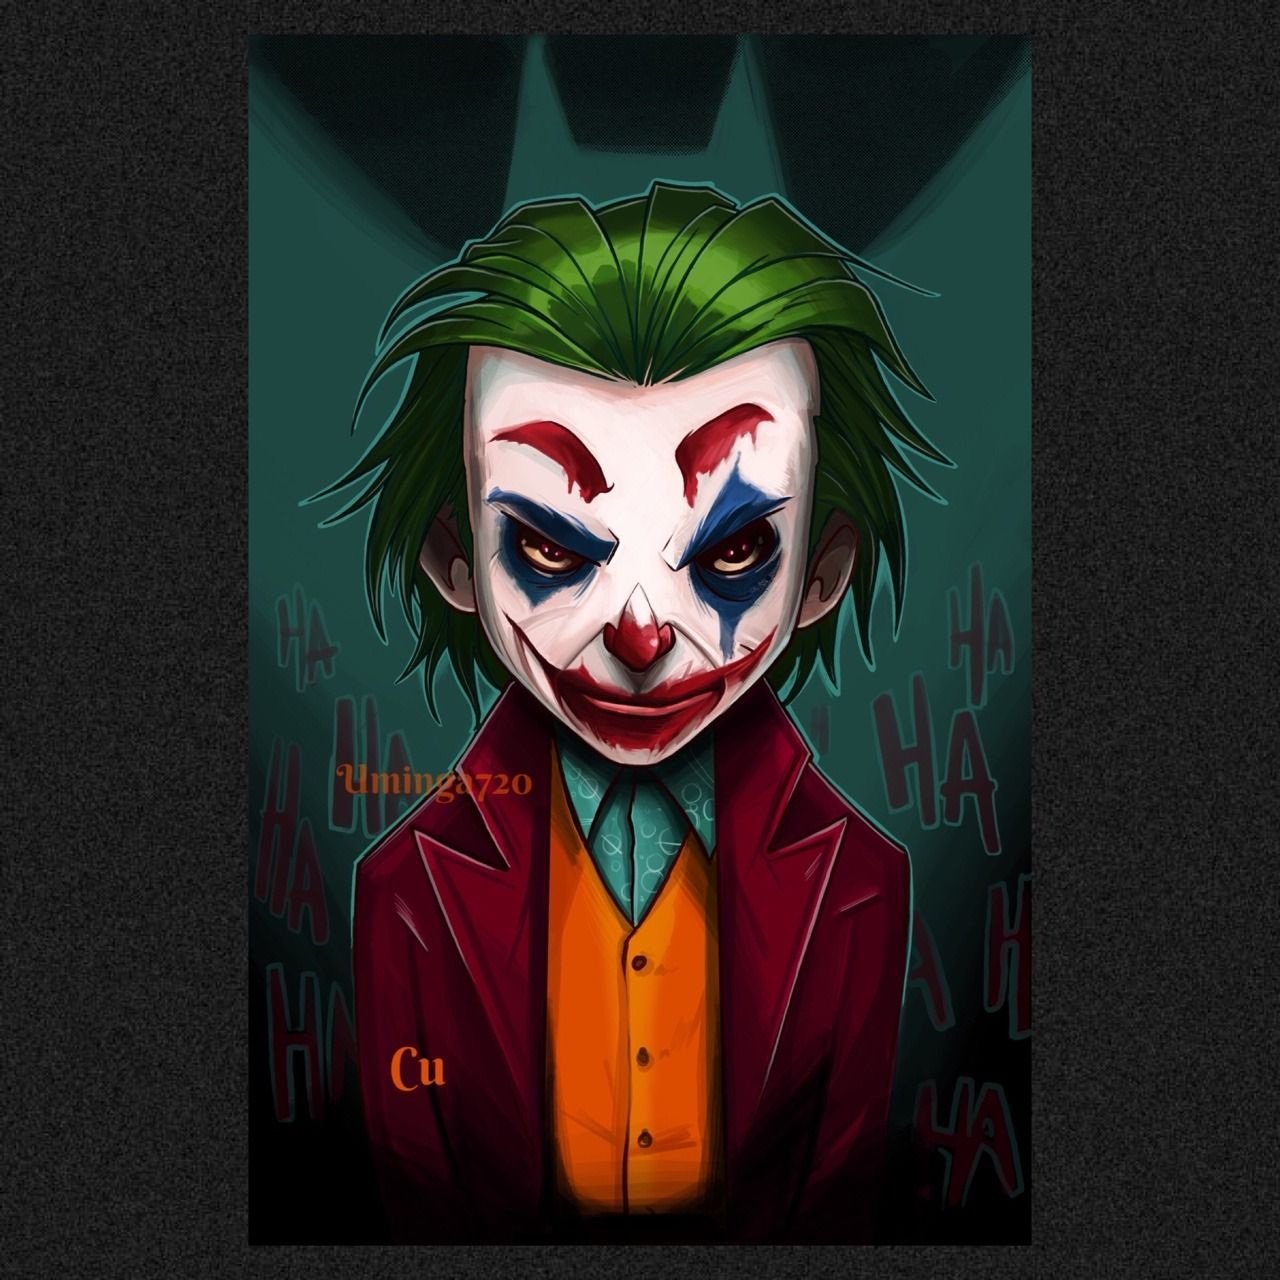 Art of Christopher Uminga. Joker artwork, Joker art, Joker wallpaper